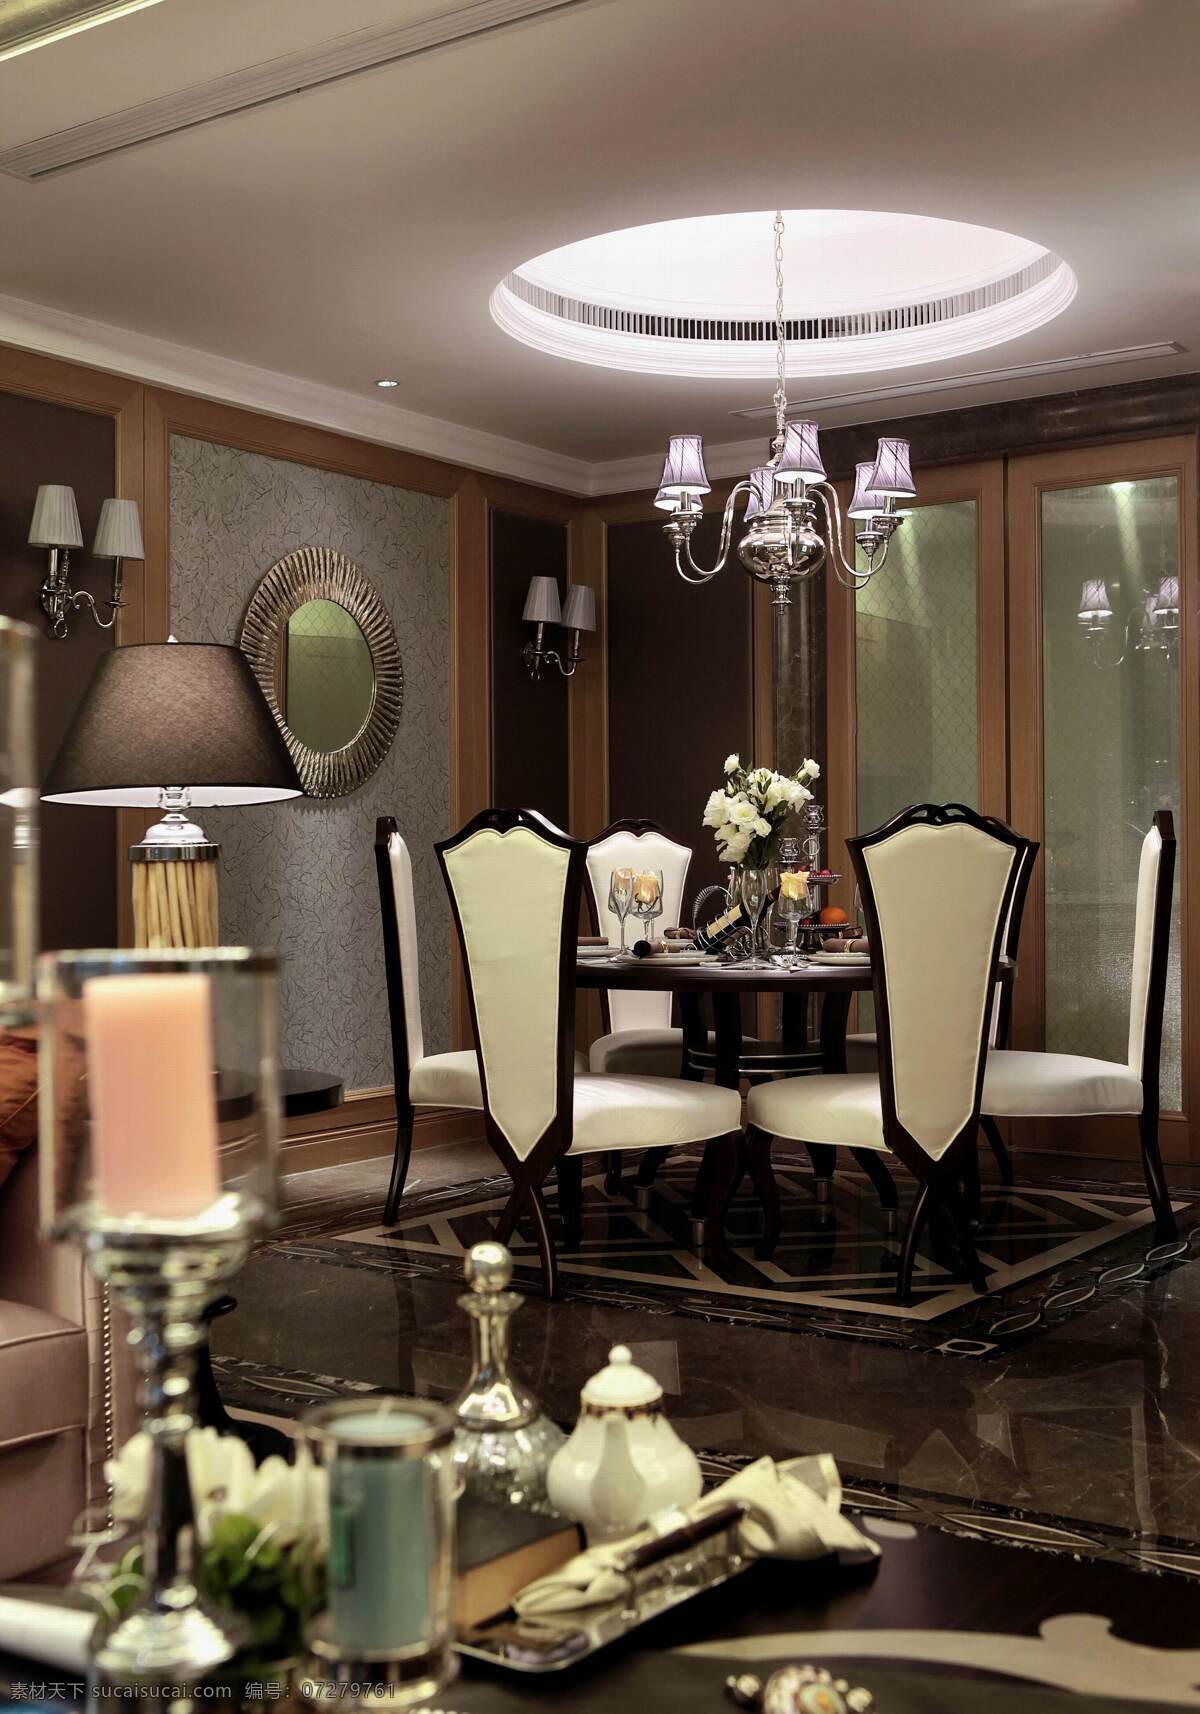 欧式 经典 豪华 风格 餐厅 装修 效果图 豪华风格 室内设计 吊灯装饰设计